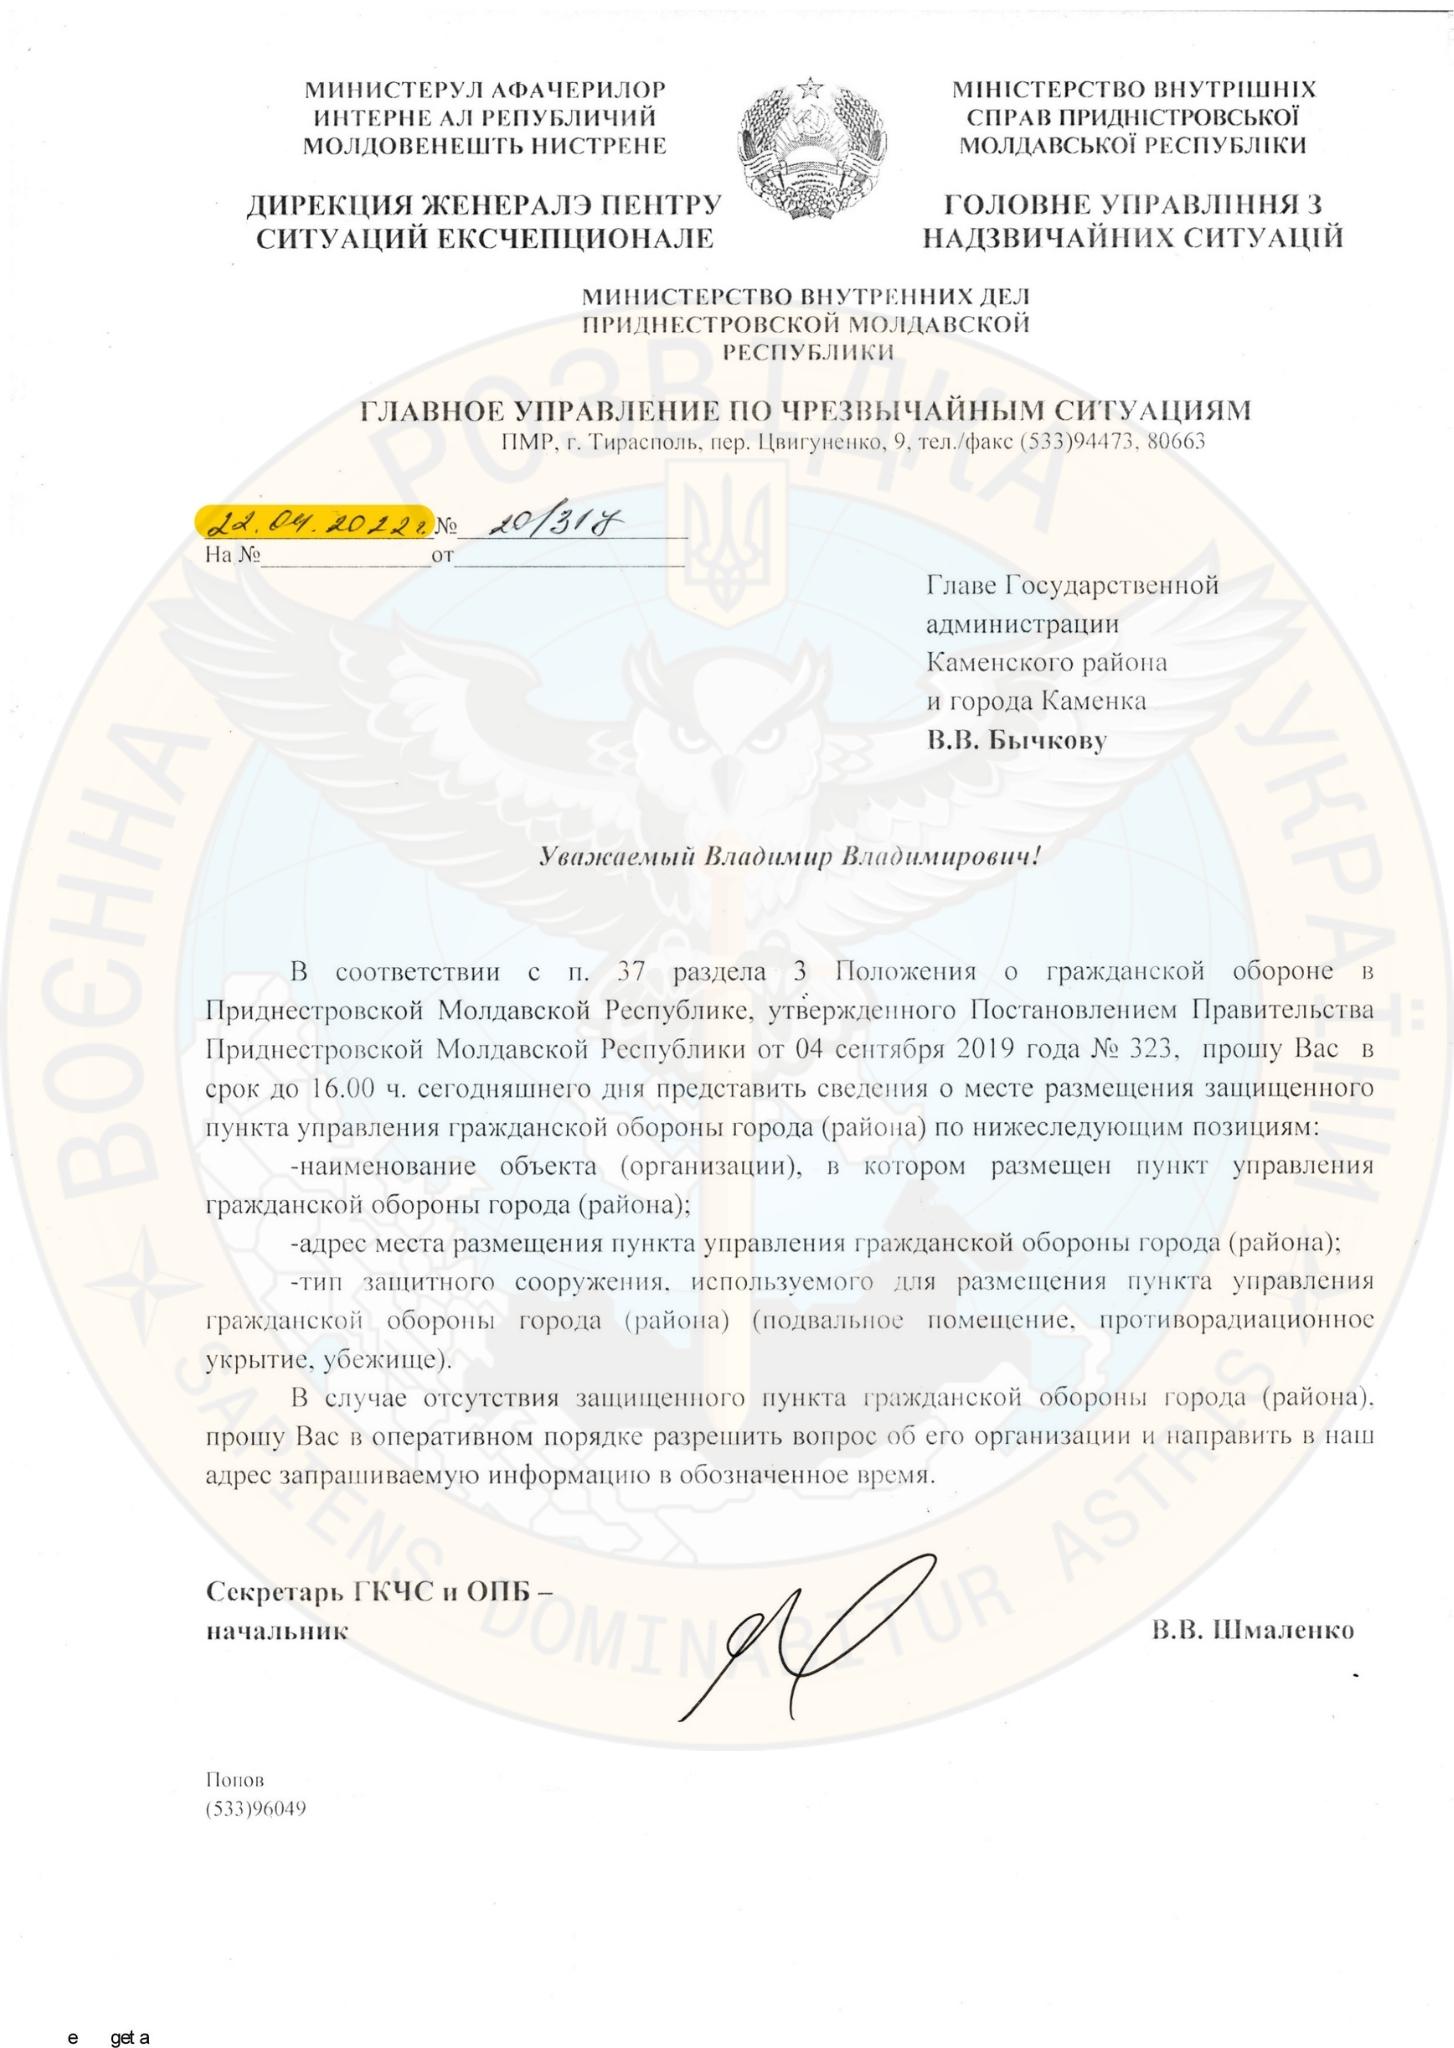 (DOC) Украинская разведка: Взрывы в Приднестровье — "спланированная провокация российских спецслужб"